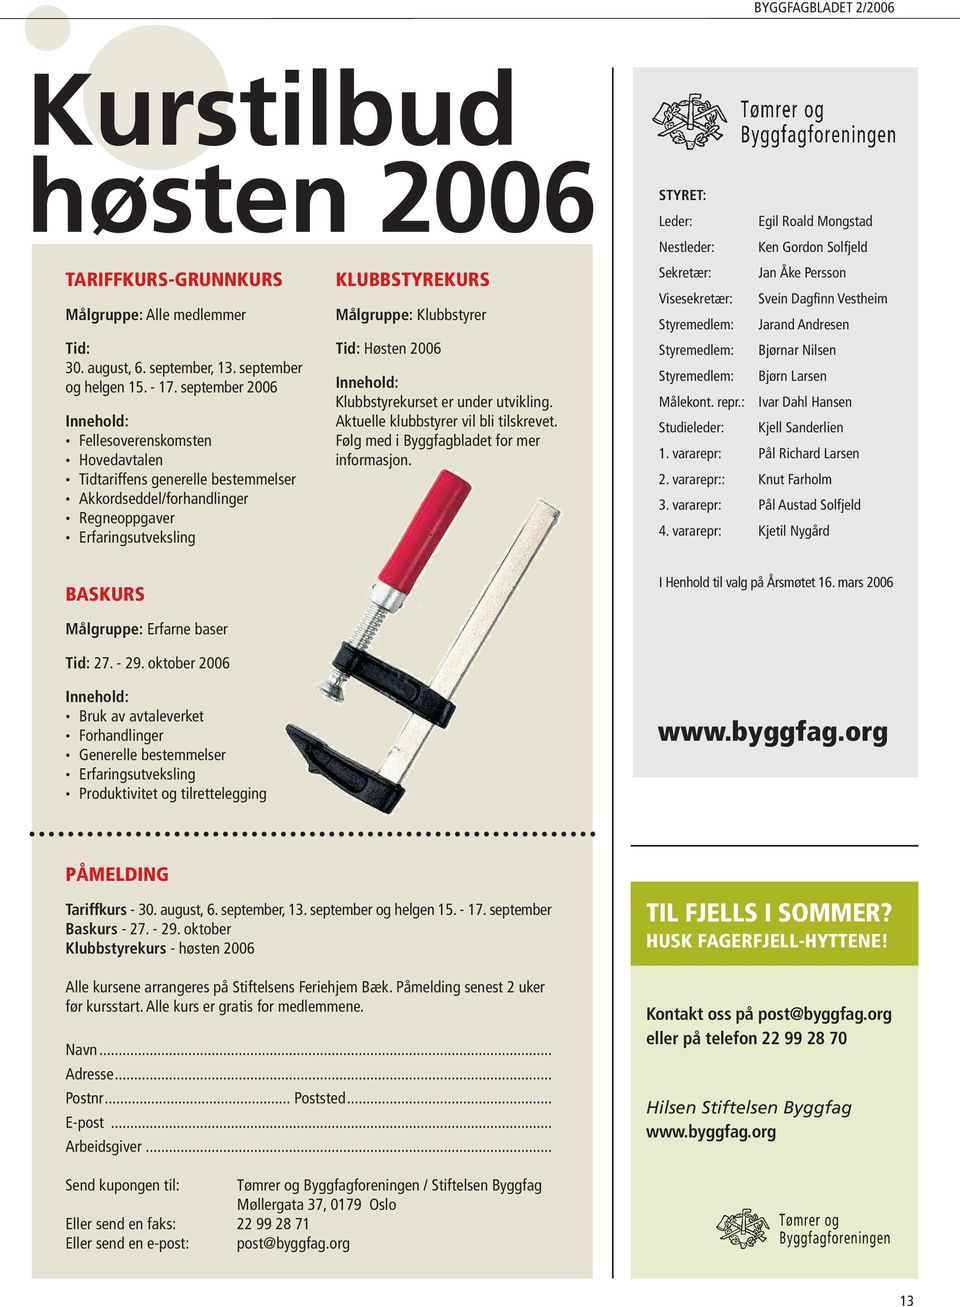 Høsten 2006 Innehold: Klubbstyrekurset er under utvikling. Aktuelle klubbstyrer vil bli tilskrevet. Følg med i Byggfagbladet for mer informasjon.